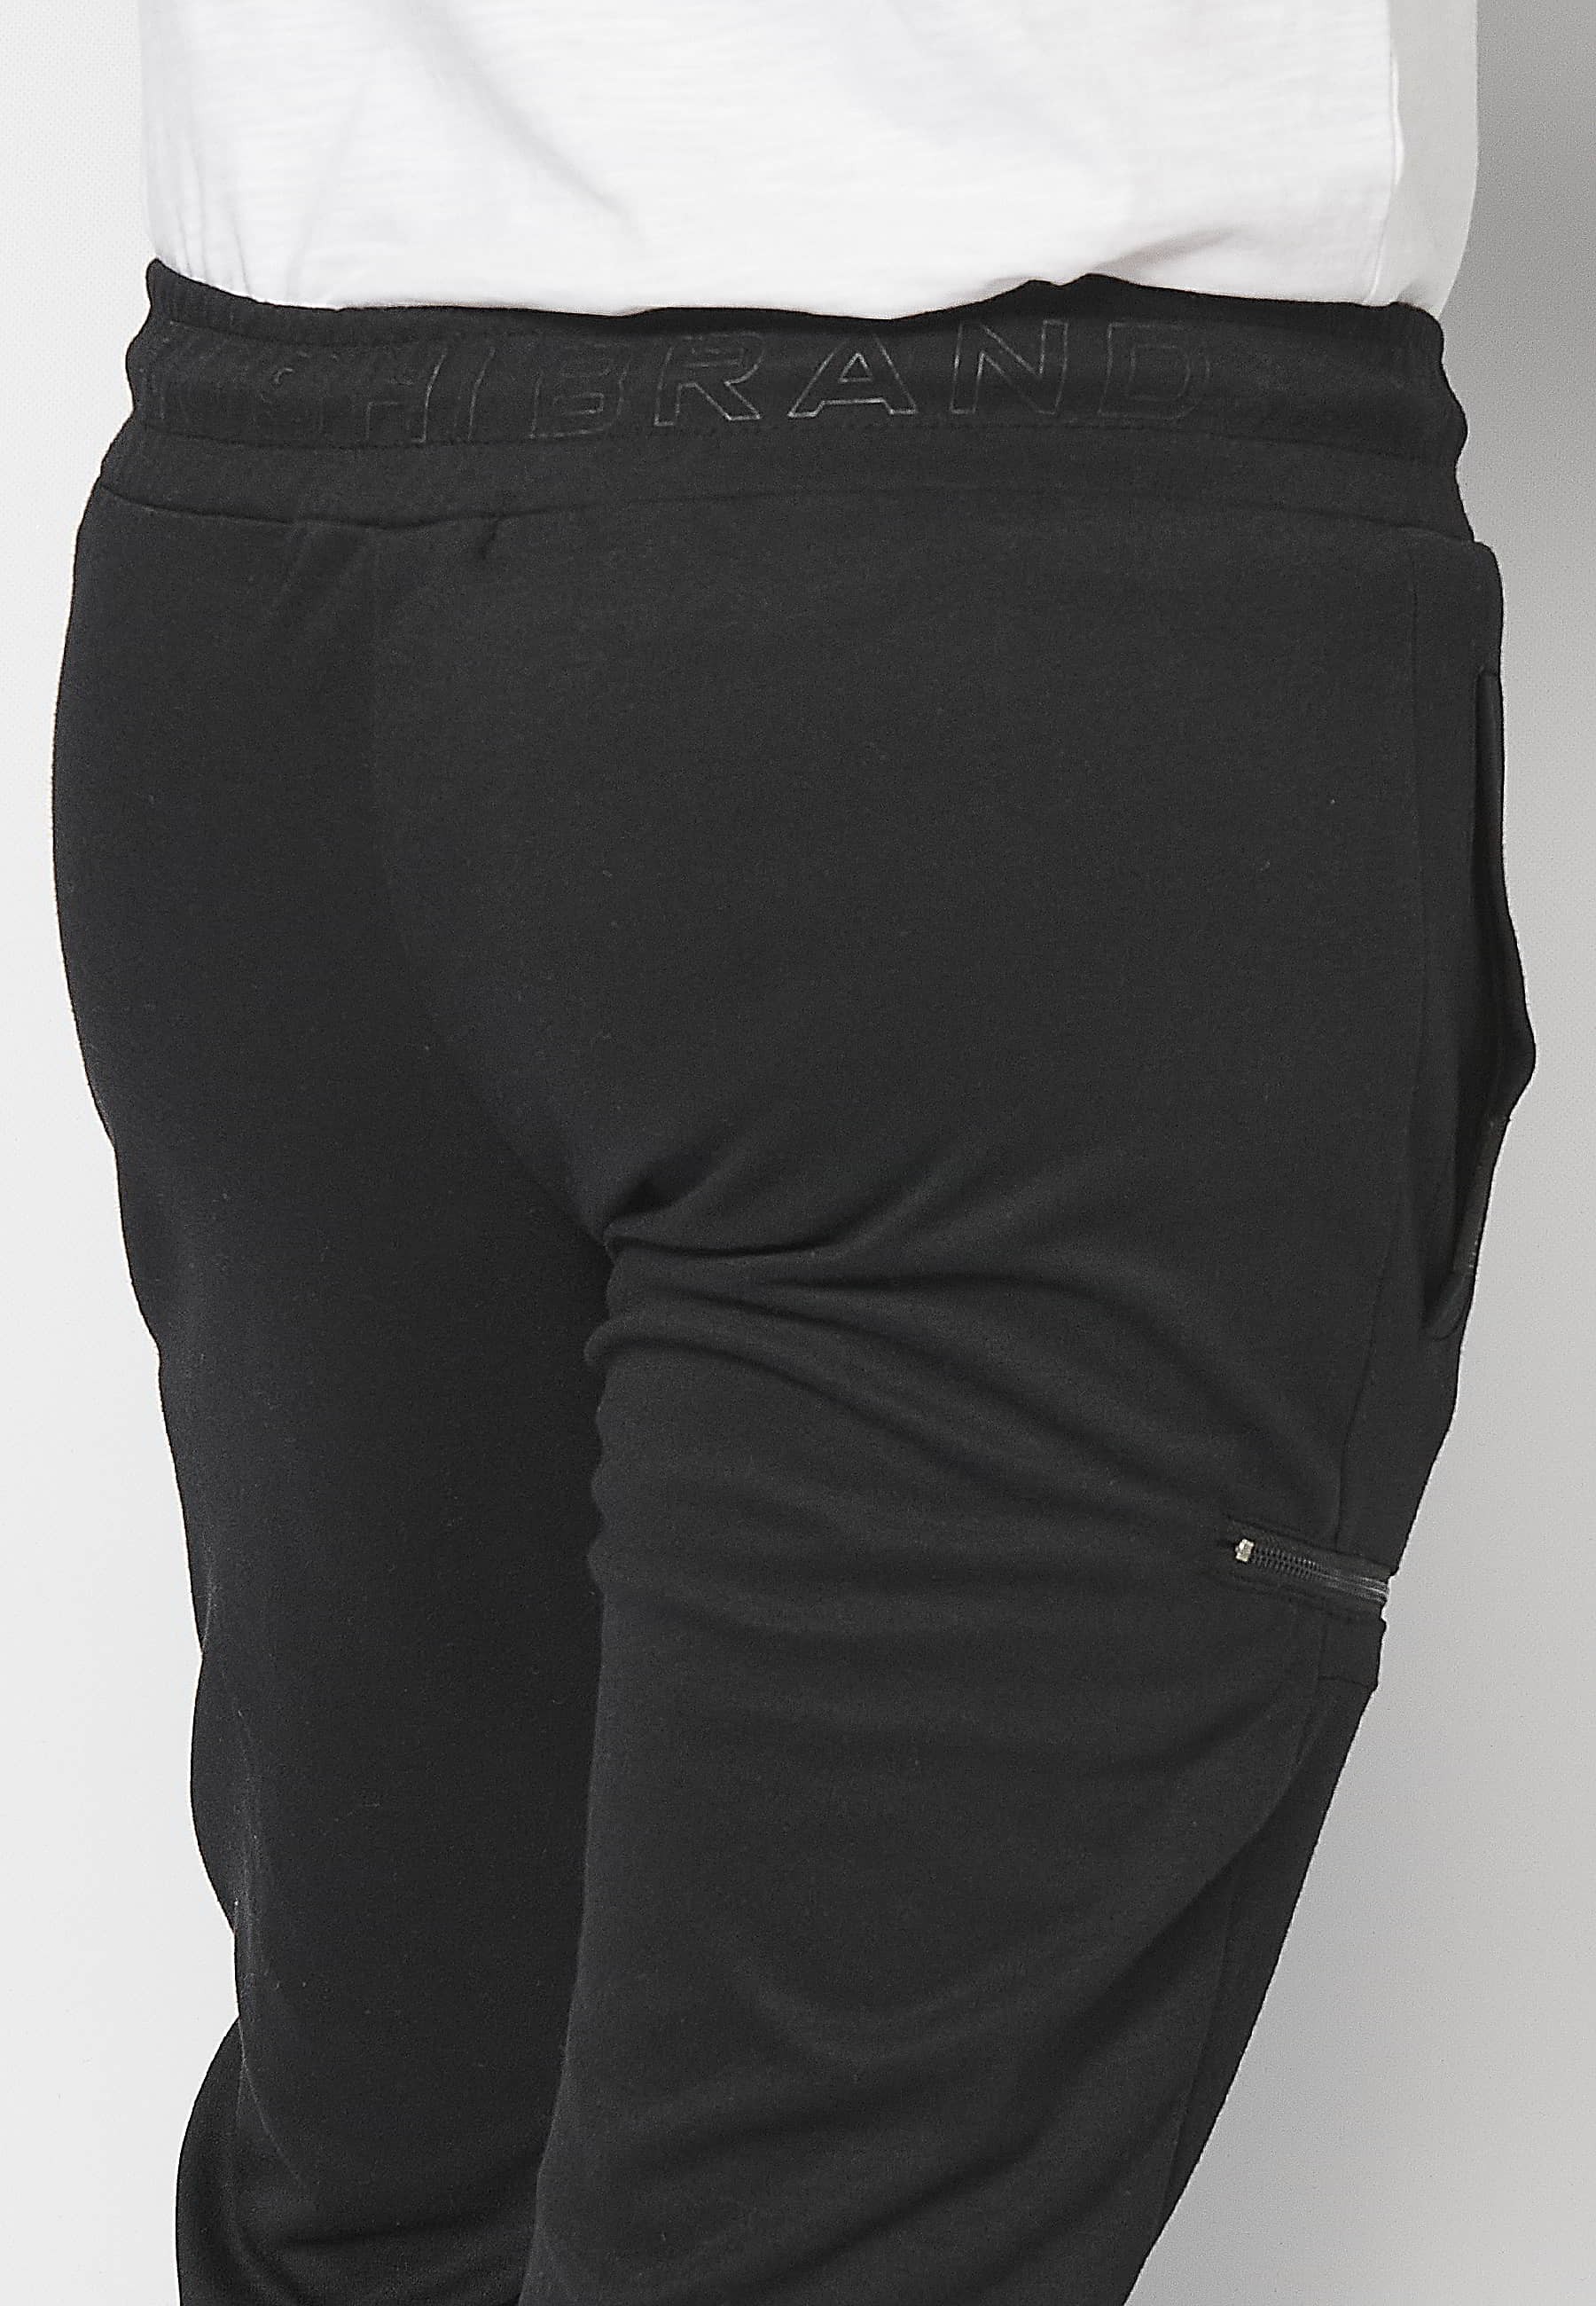 Lange Jogginghose mit elastischem Bund und Kordelzug mit Ausschnitten an den Knien in der Farbe Schwarz für Herren